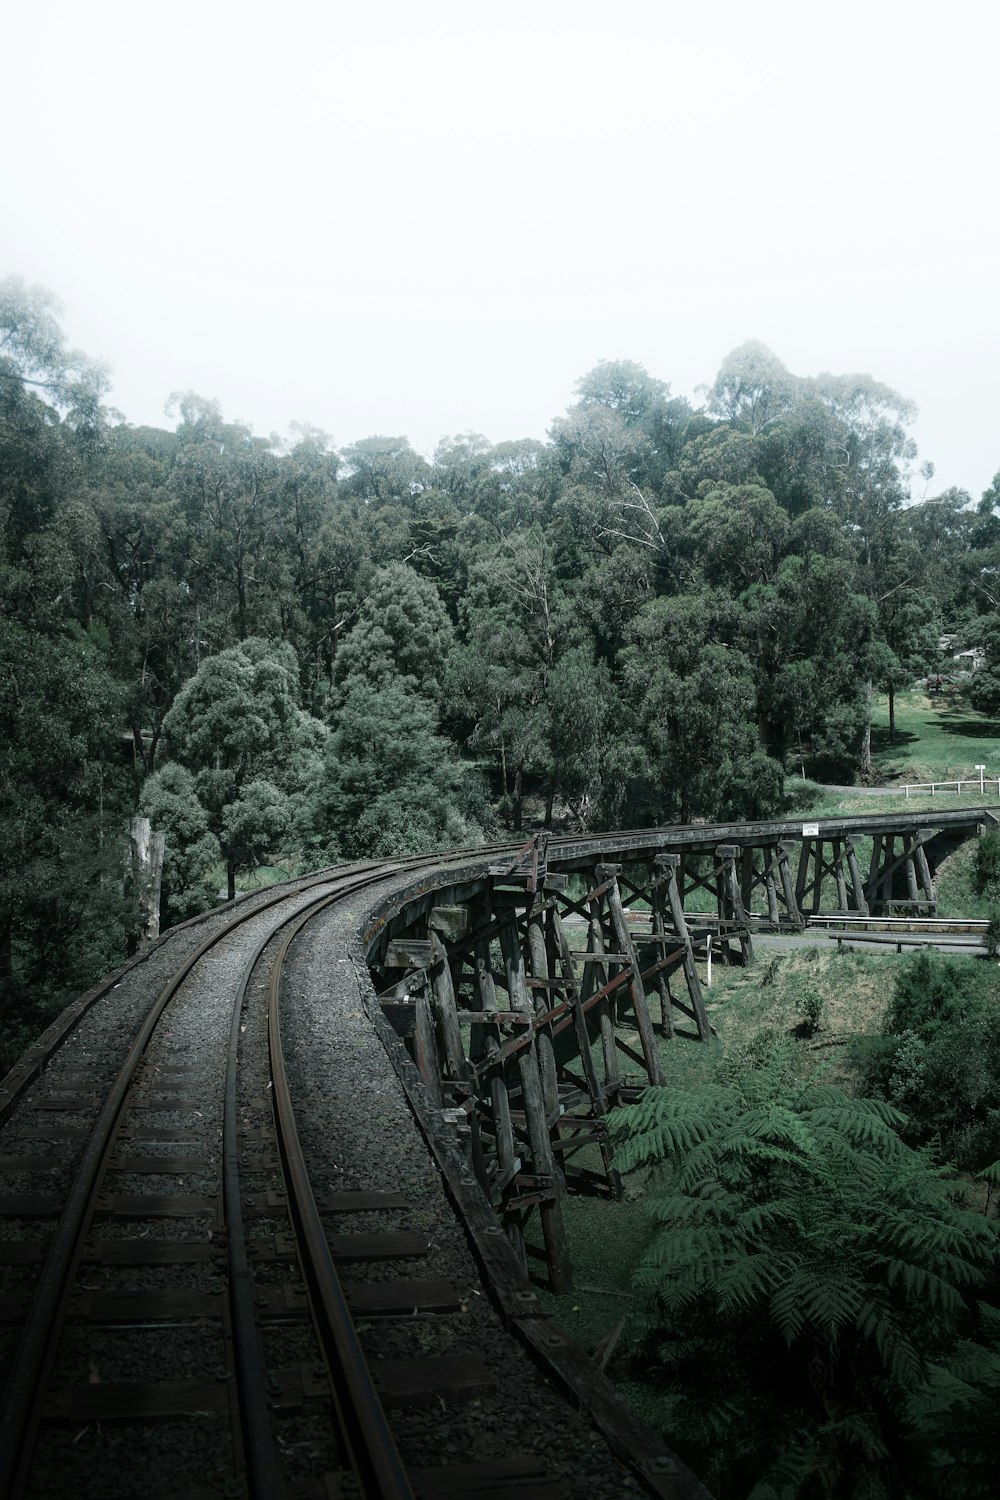 ferrovia del treno vicino agli alberi verdi durante il giorno